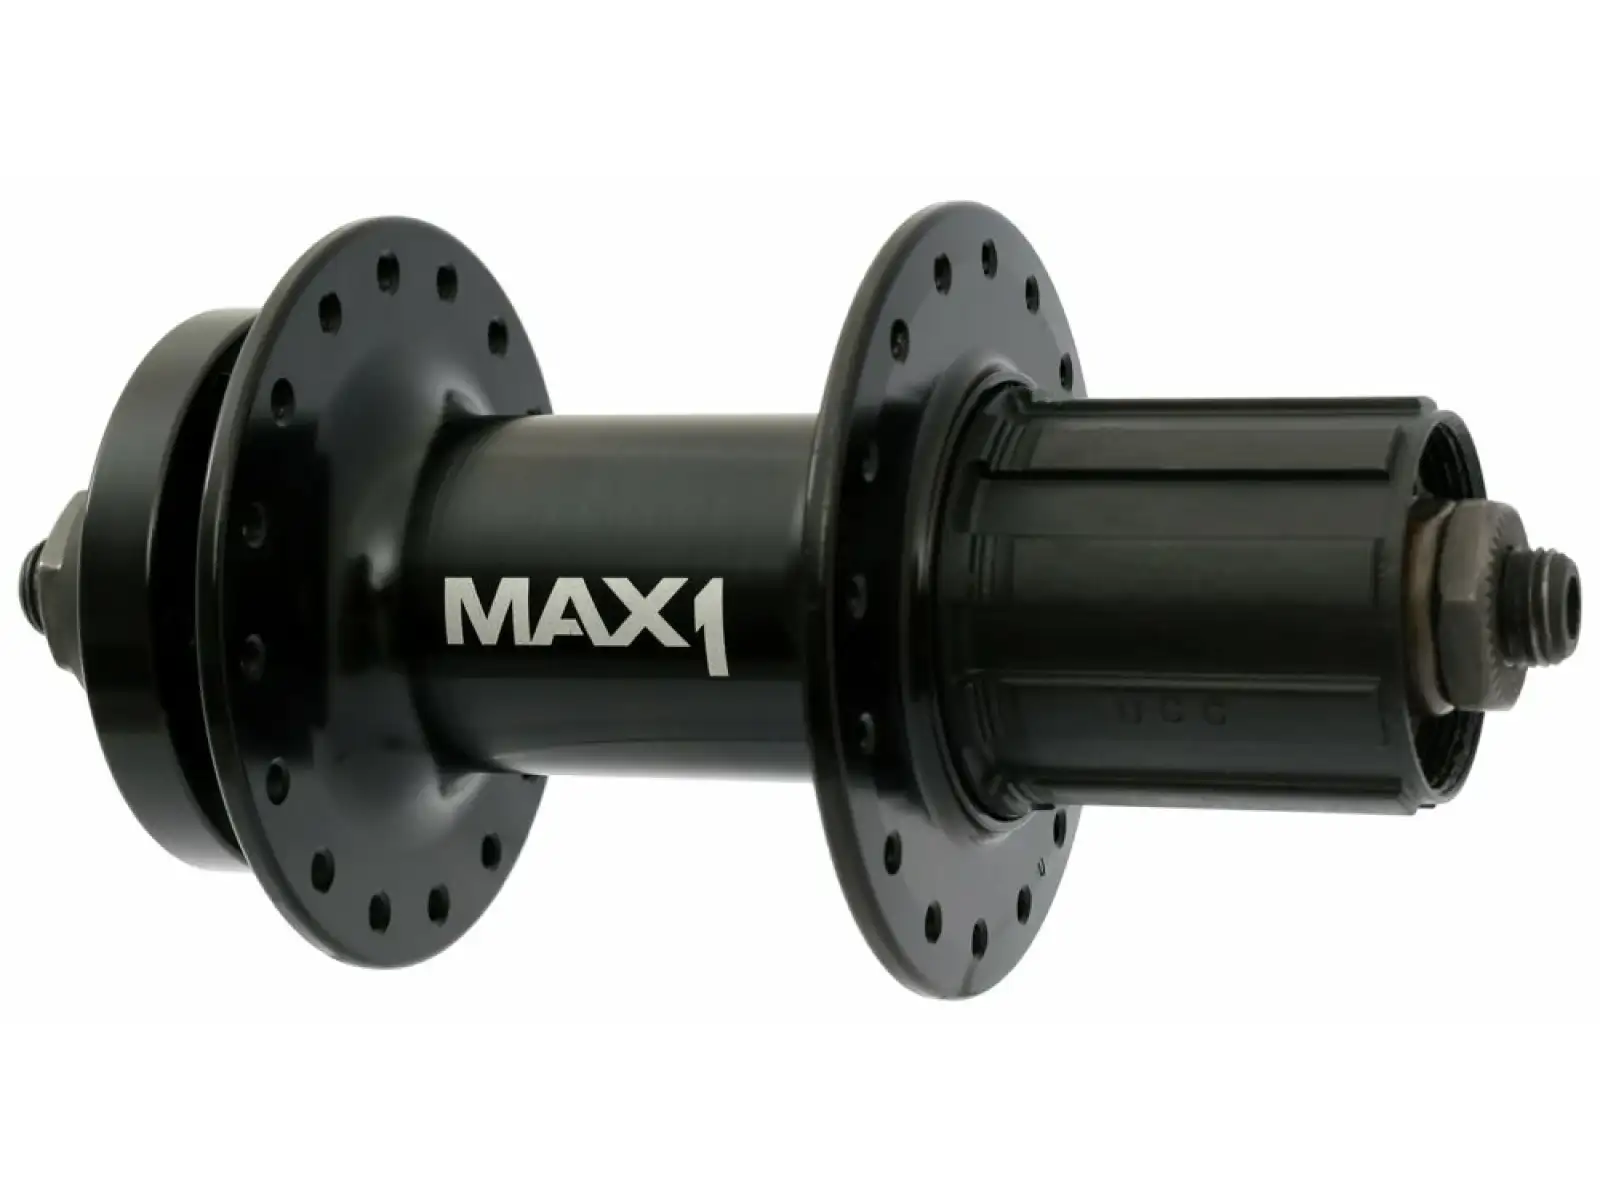 MAX1 Sport zadní náboj 5x135 mm černá 32 děr ořech HG9